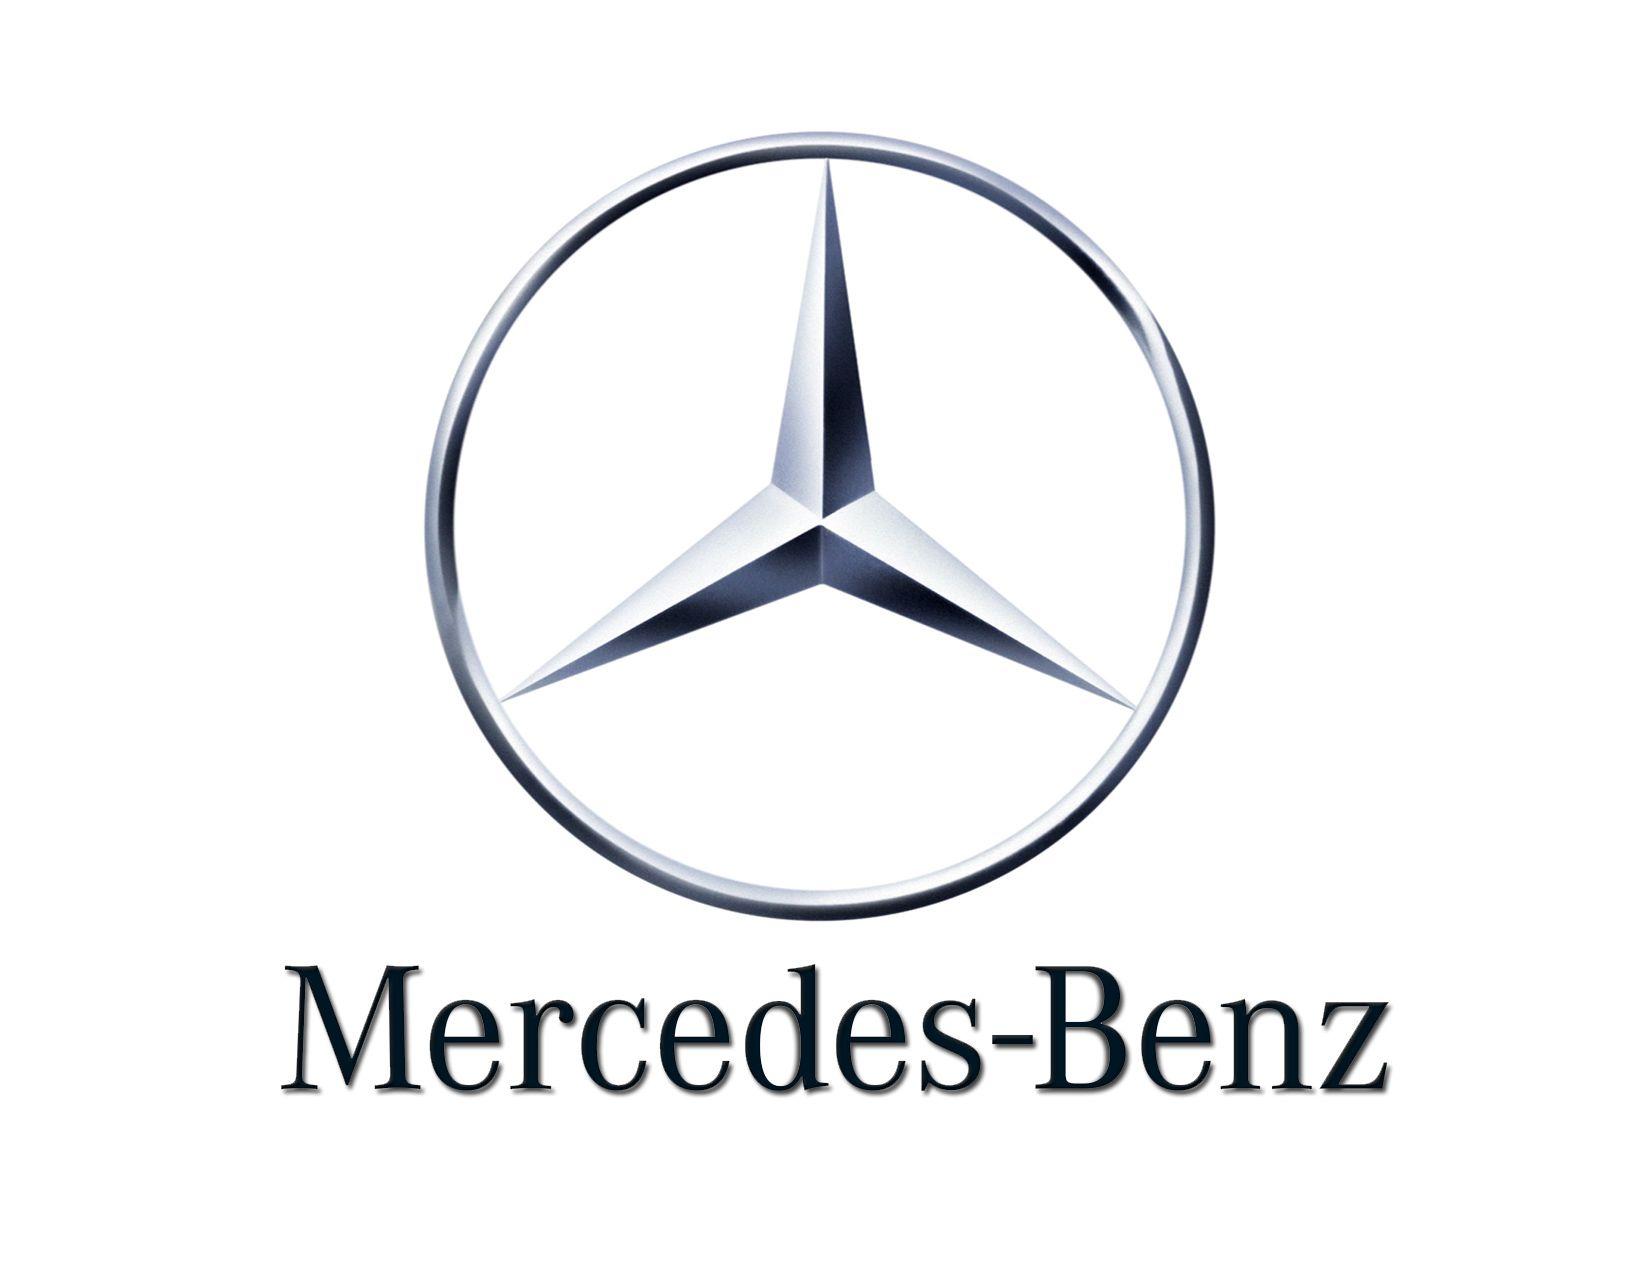 2018 Mercedes Logo - Mercedes Logo - Mercedes-Benz Brampton